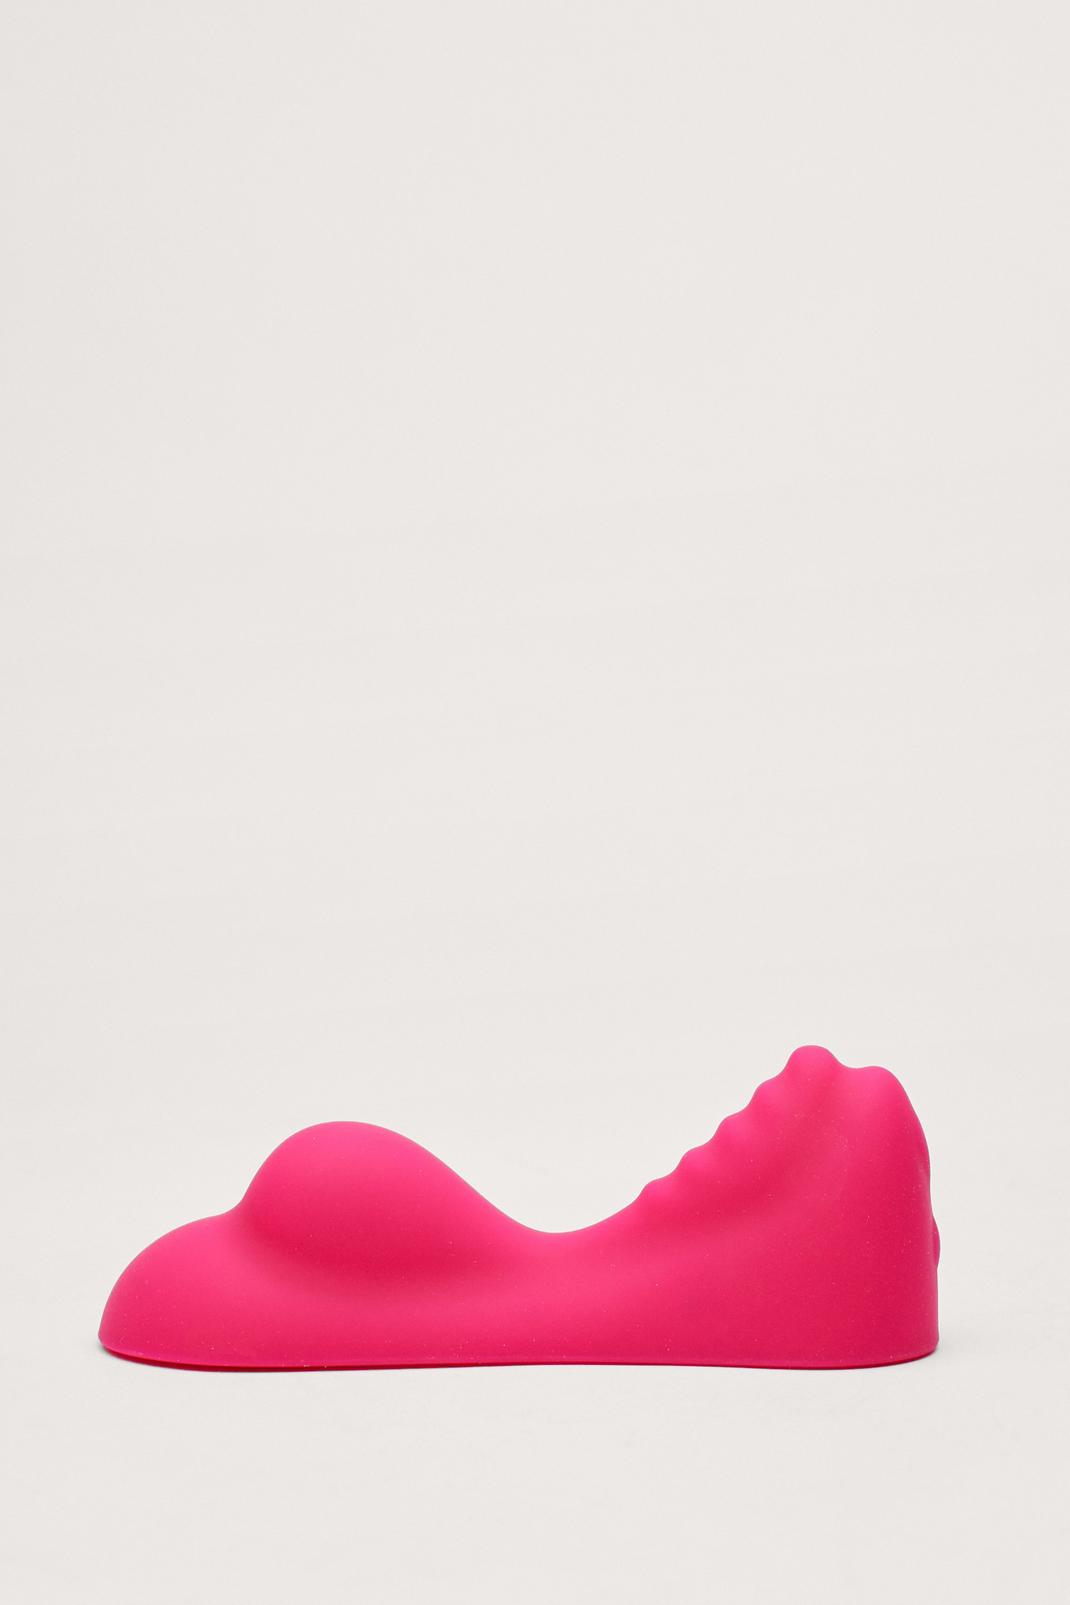 Hot pink Ridged Seat Vibrator Sex Toy image number 1